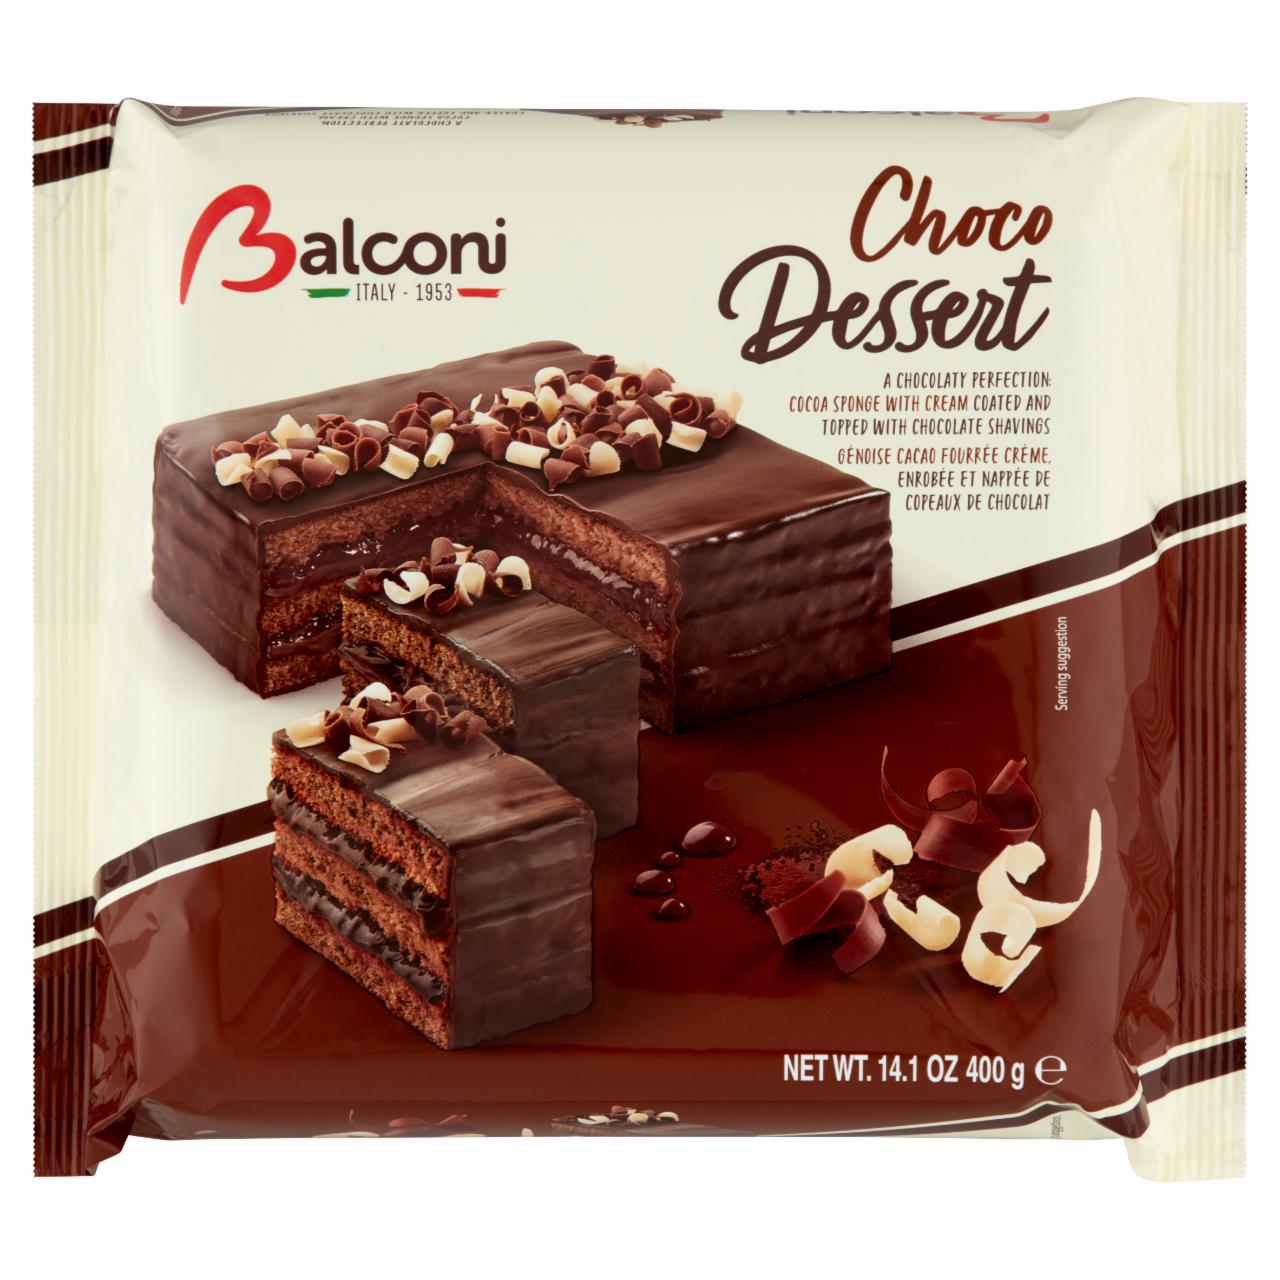 Képek - Balconi Chocodessert édes sütőipari termék zsírszegény kakaótartalmú bevonattal 400 g